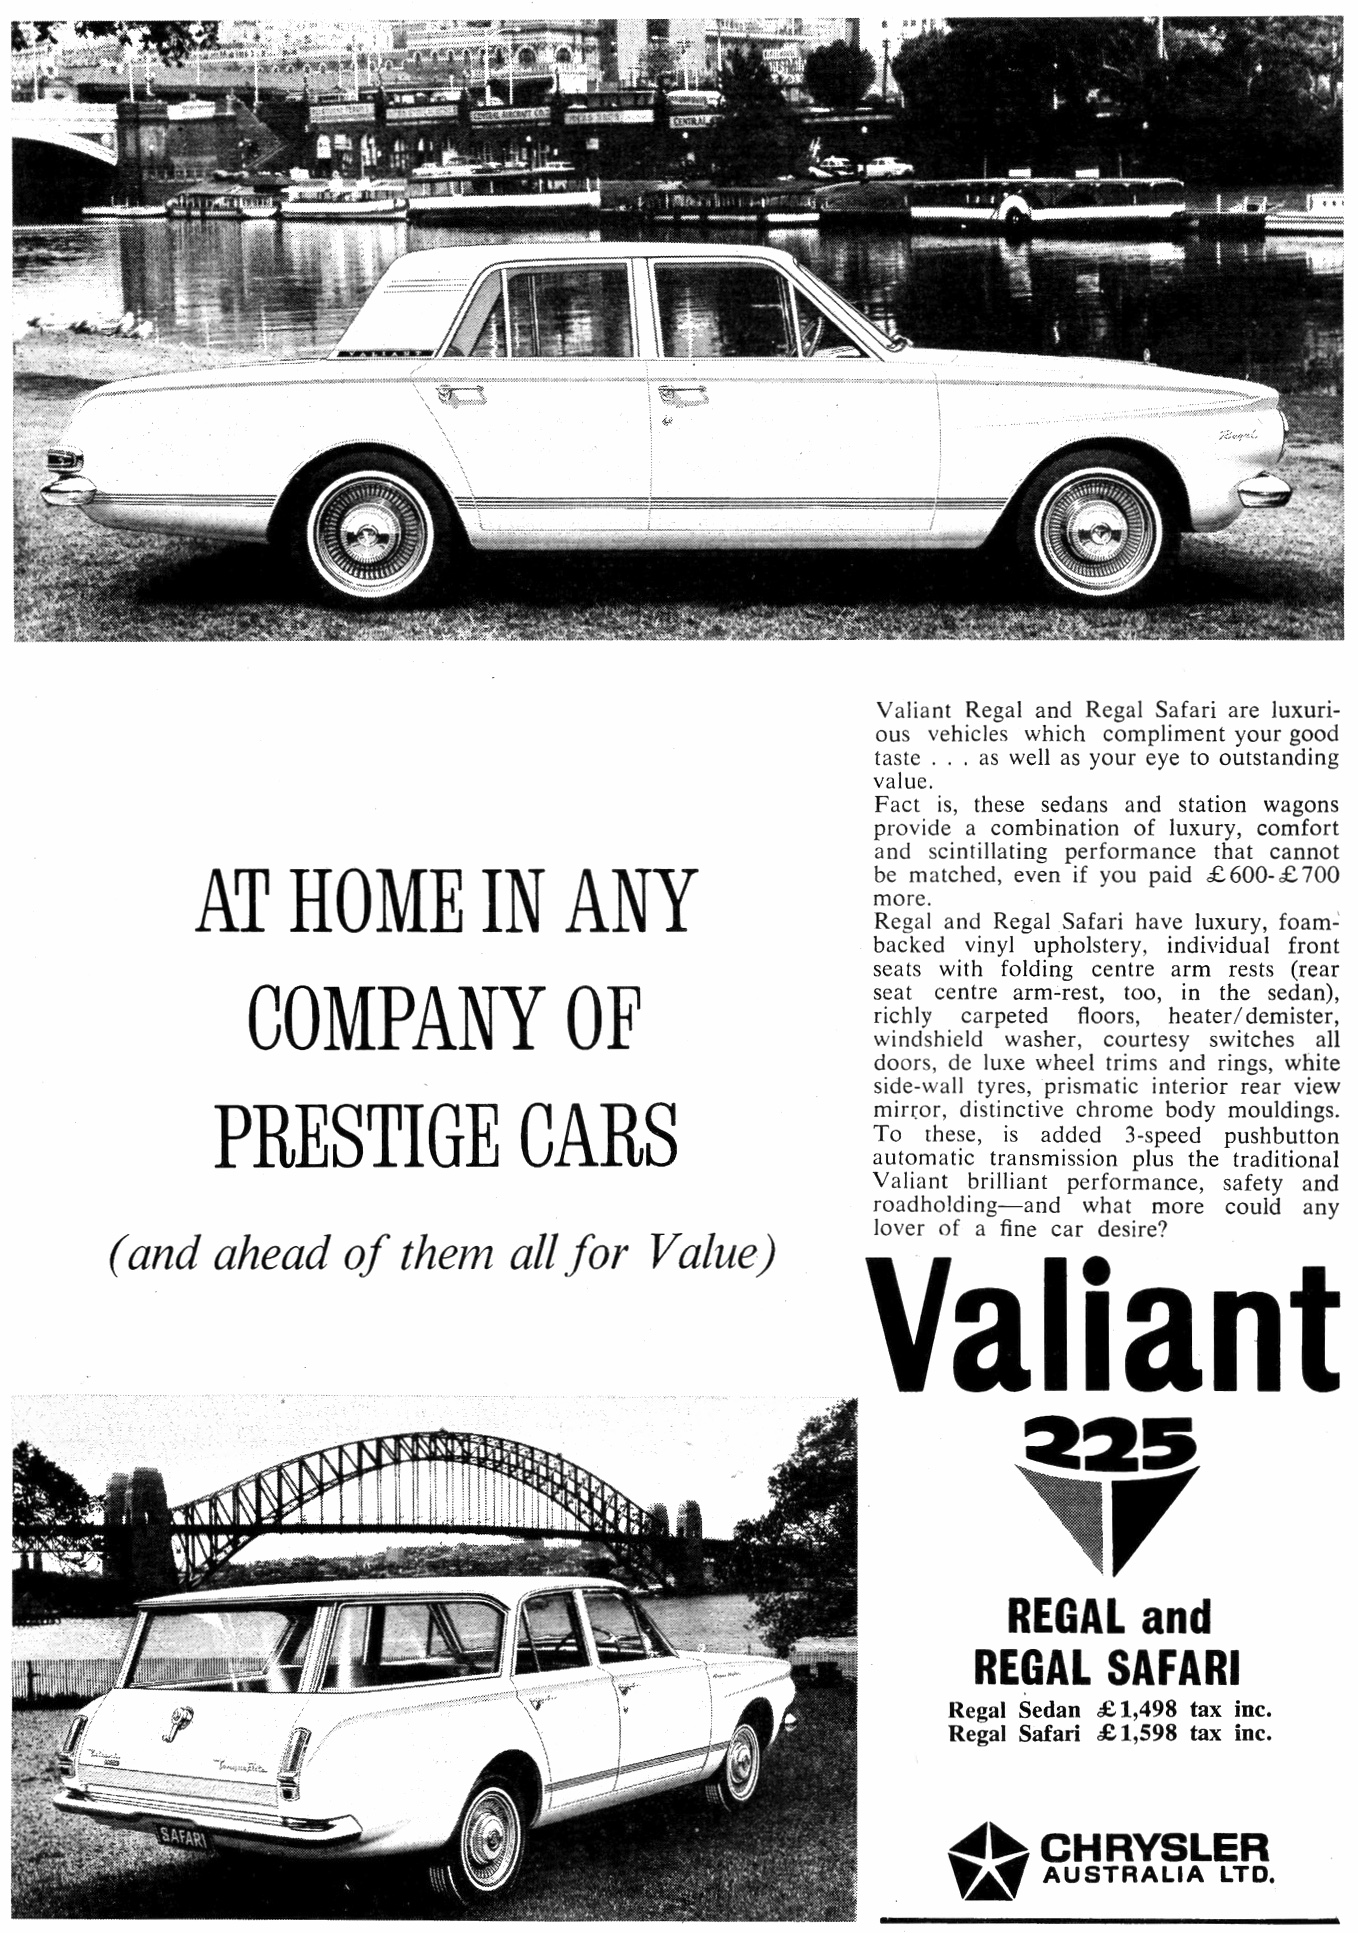 1964 AP5 Chrysler Valiant 225 Regal & Regal Safari